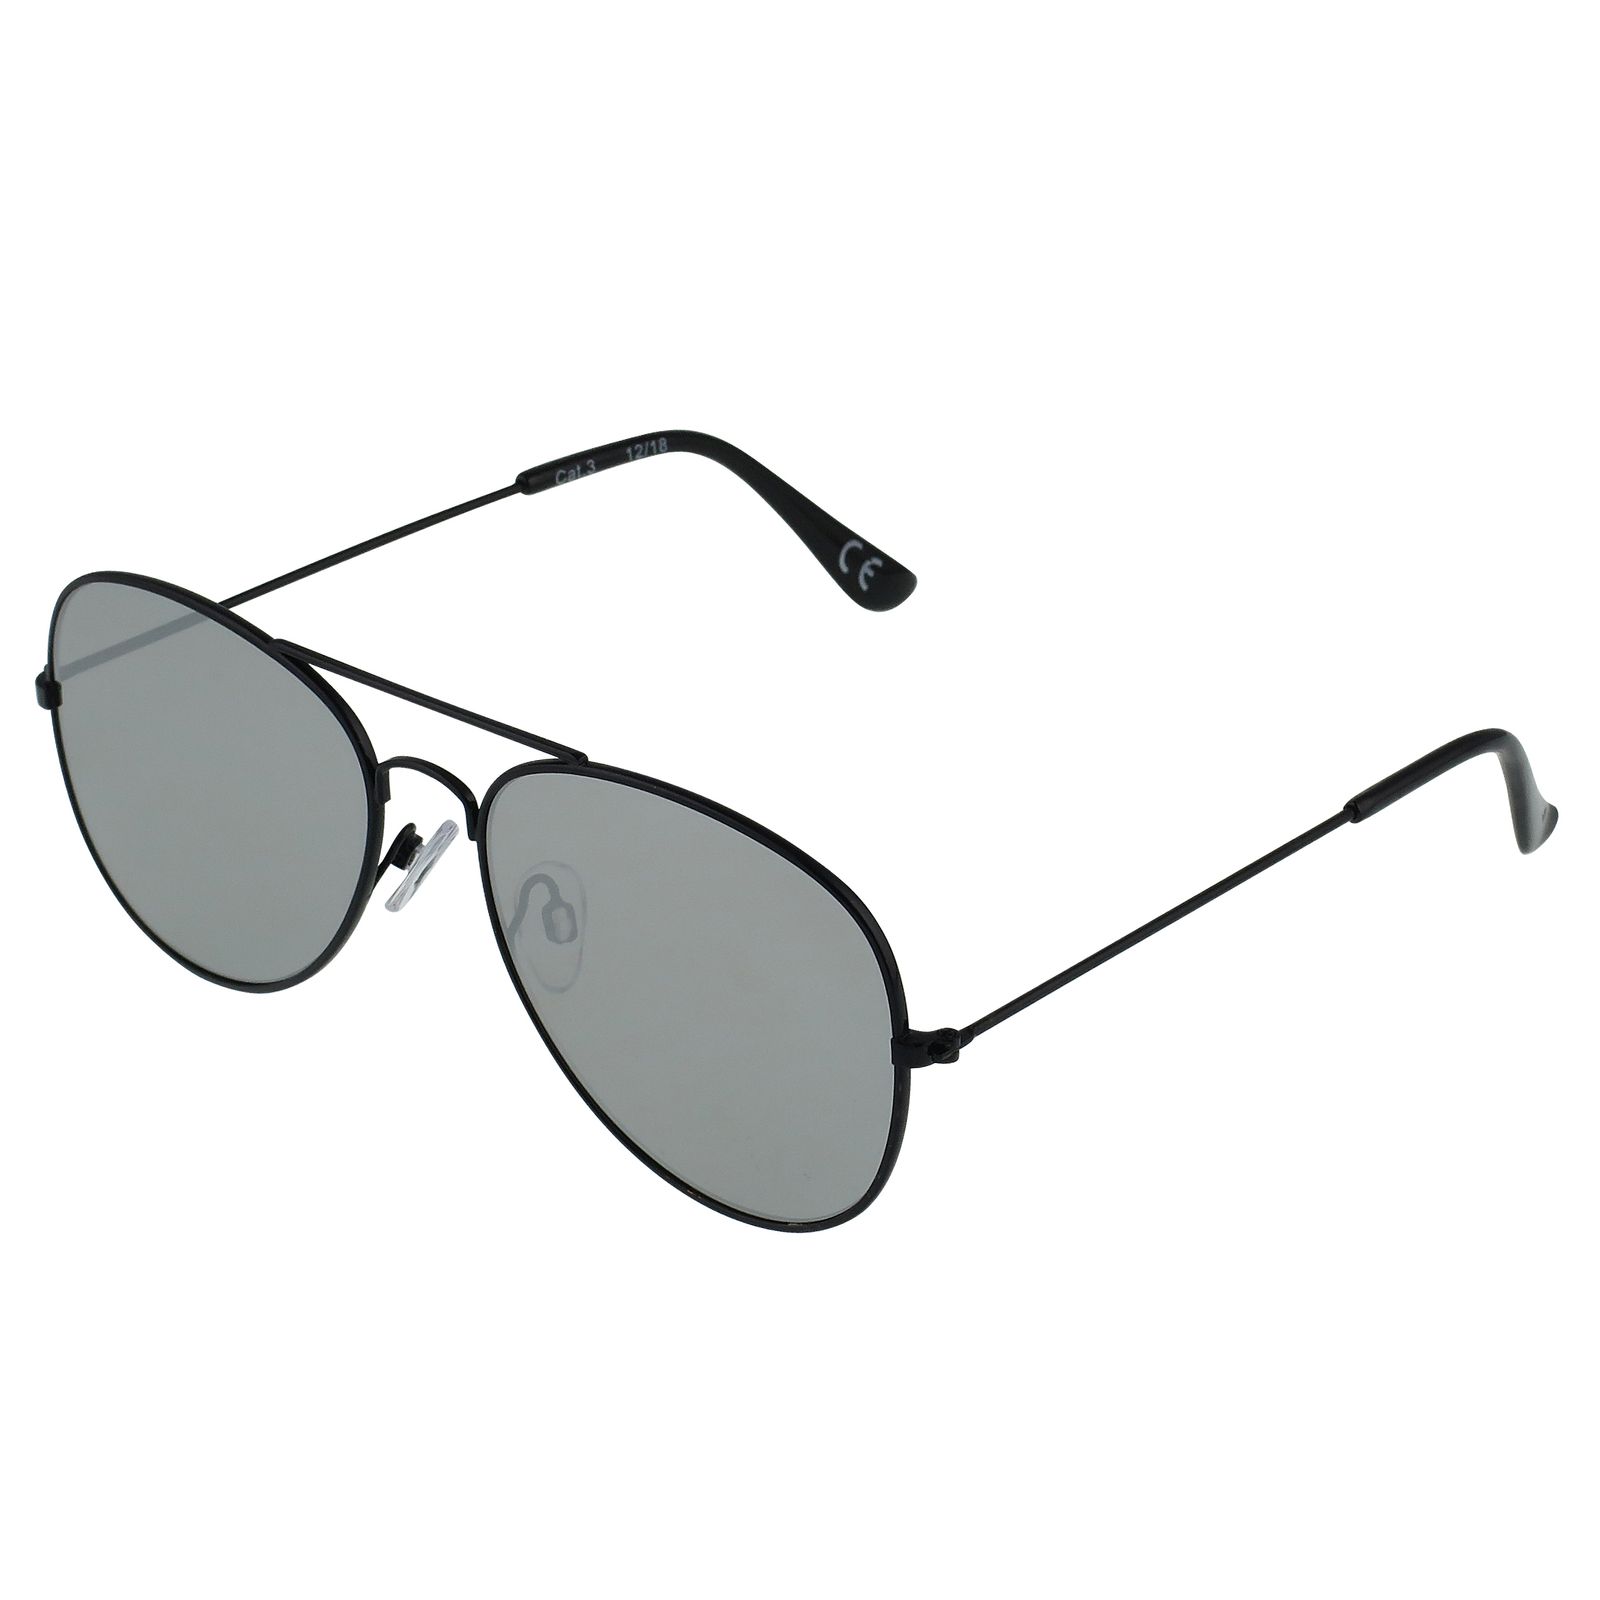 عینک آفتابی مدل 001 -  - 3